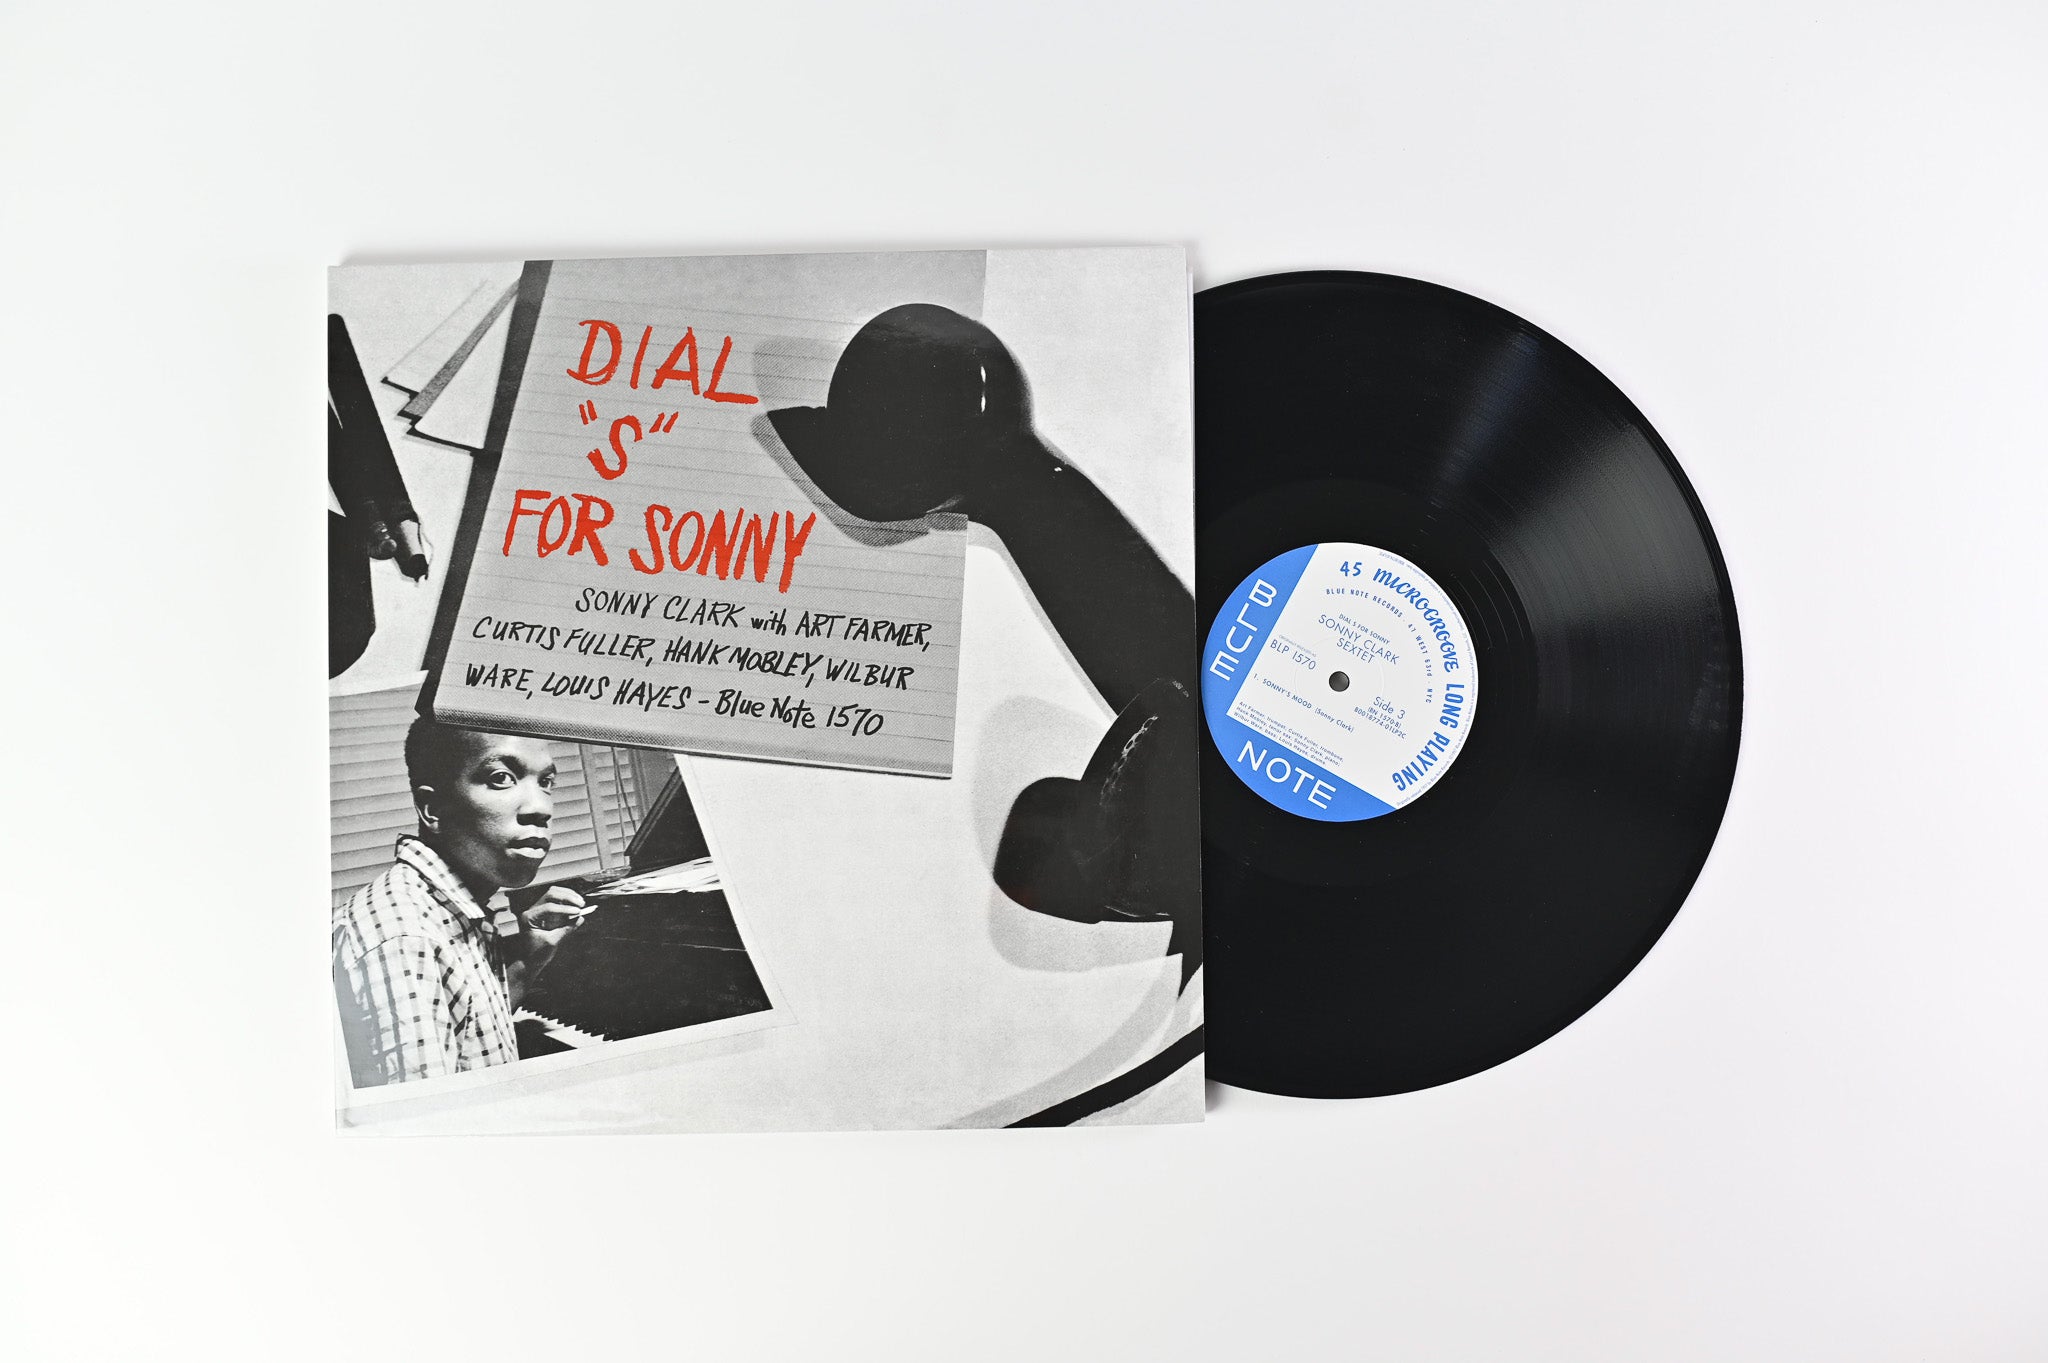 Sonny Clark - Dial "S" For Sonny on Blue Note Music Matters Ltd Reissue 45 RPM